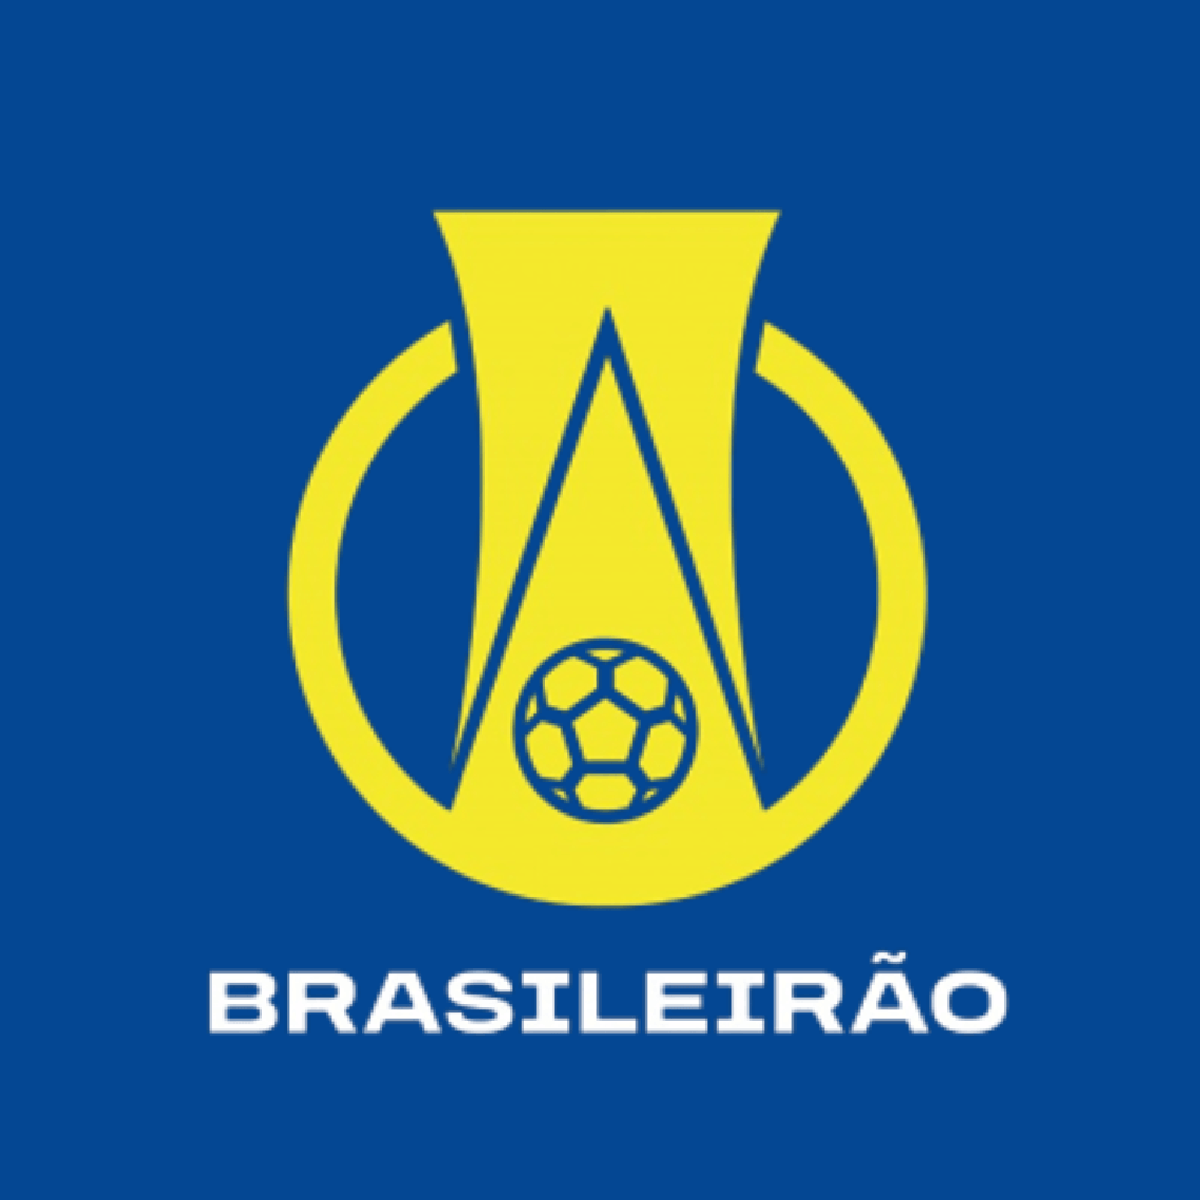 Campeonato Brasileiro de Futebol de 2021 - Série A – Wikipédia, a